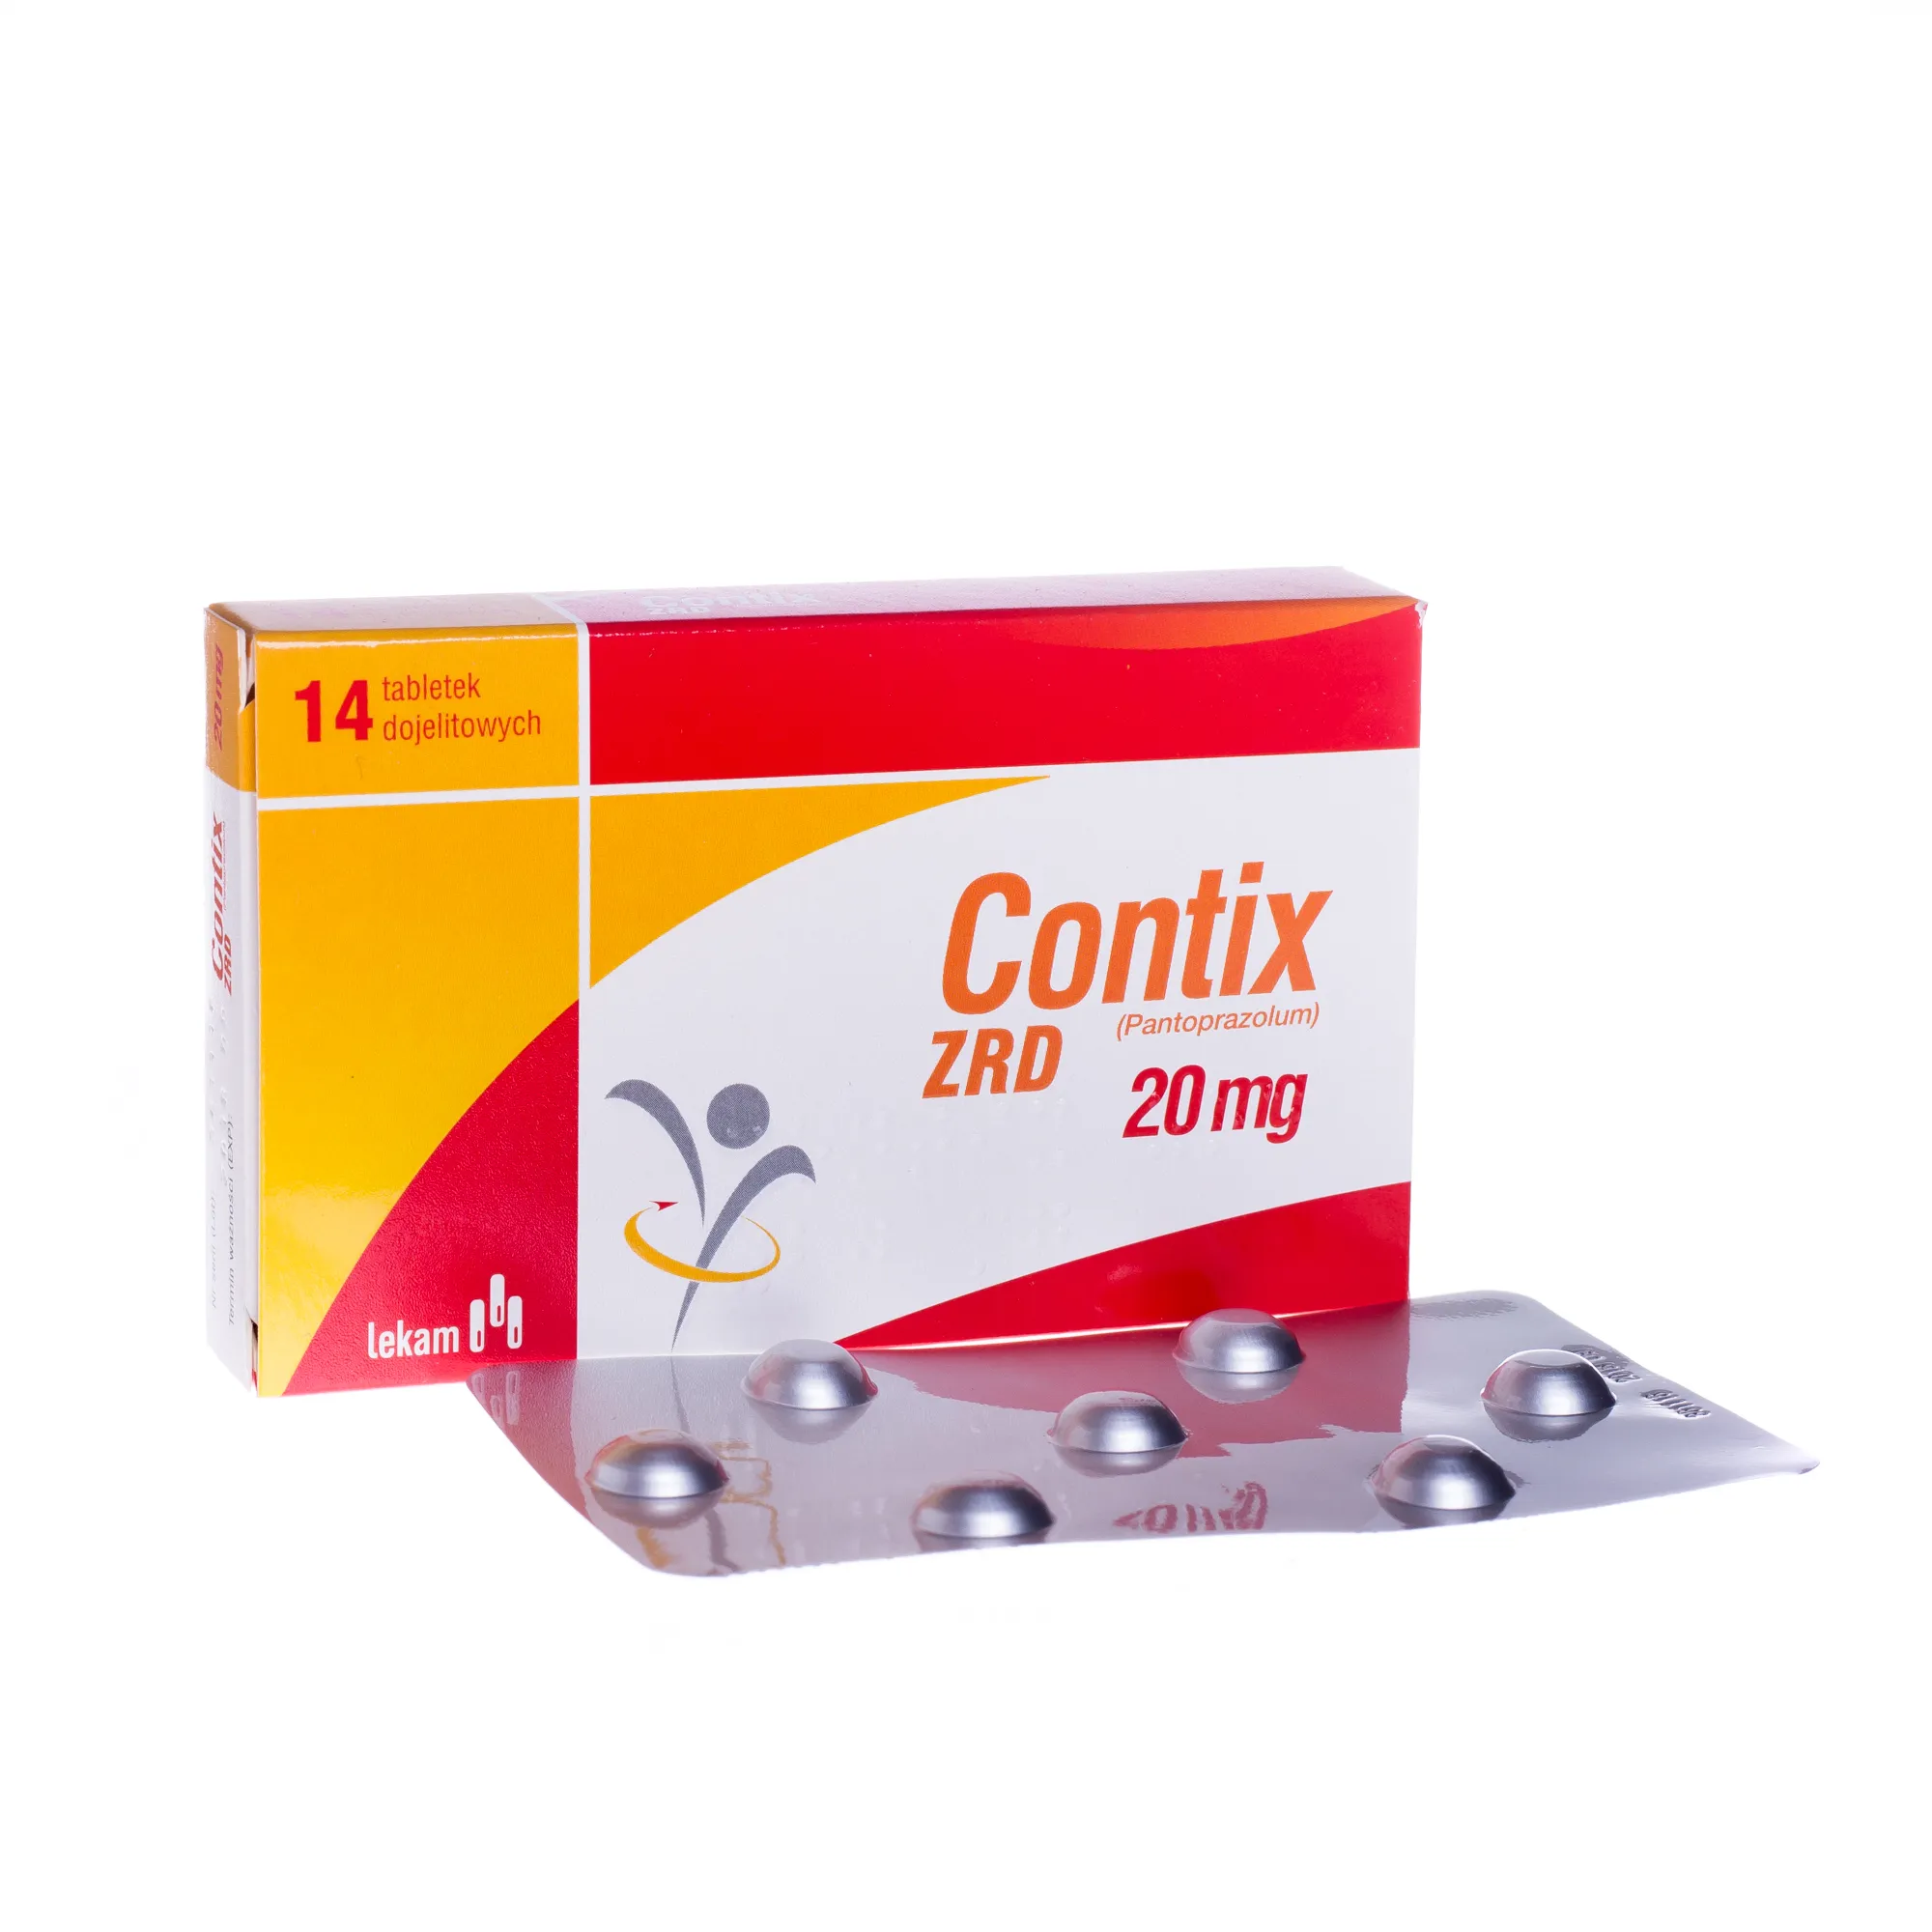 Contix ZRD, 20 mg, 14 tabletek dojelitowych 